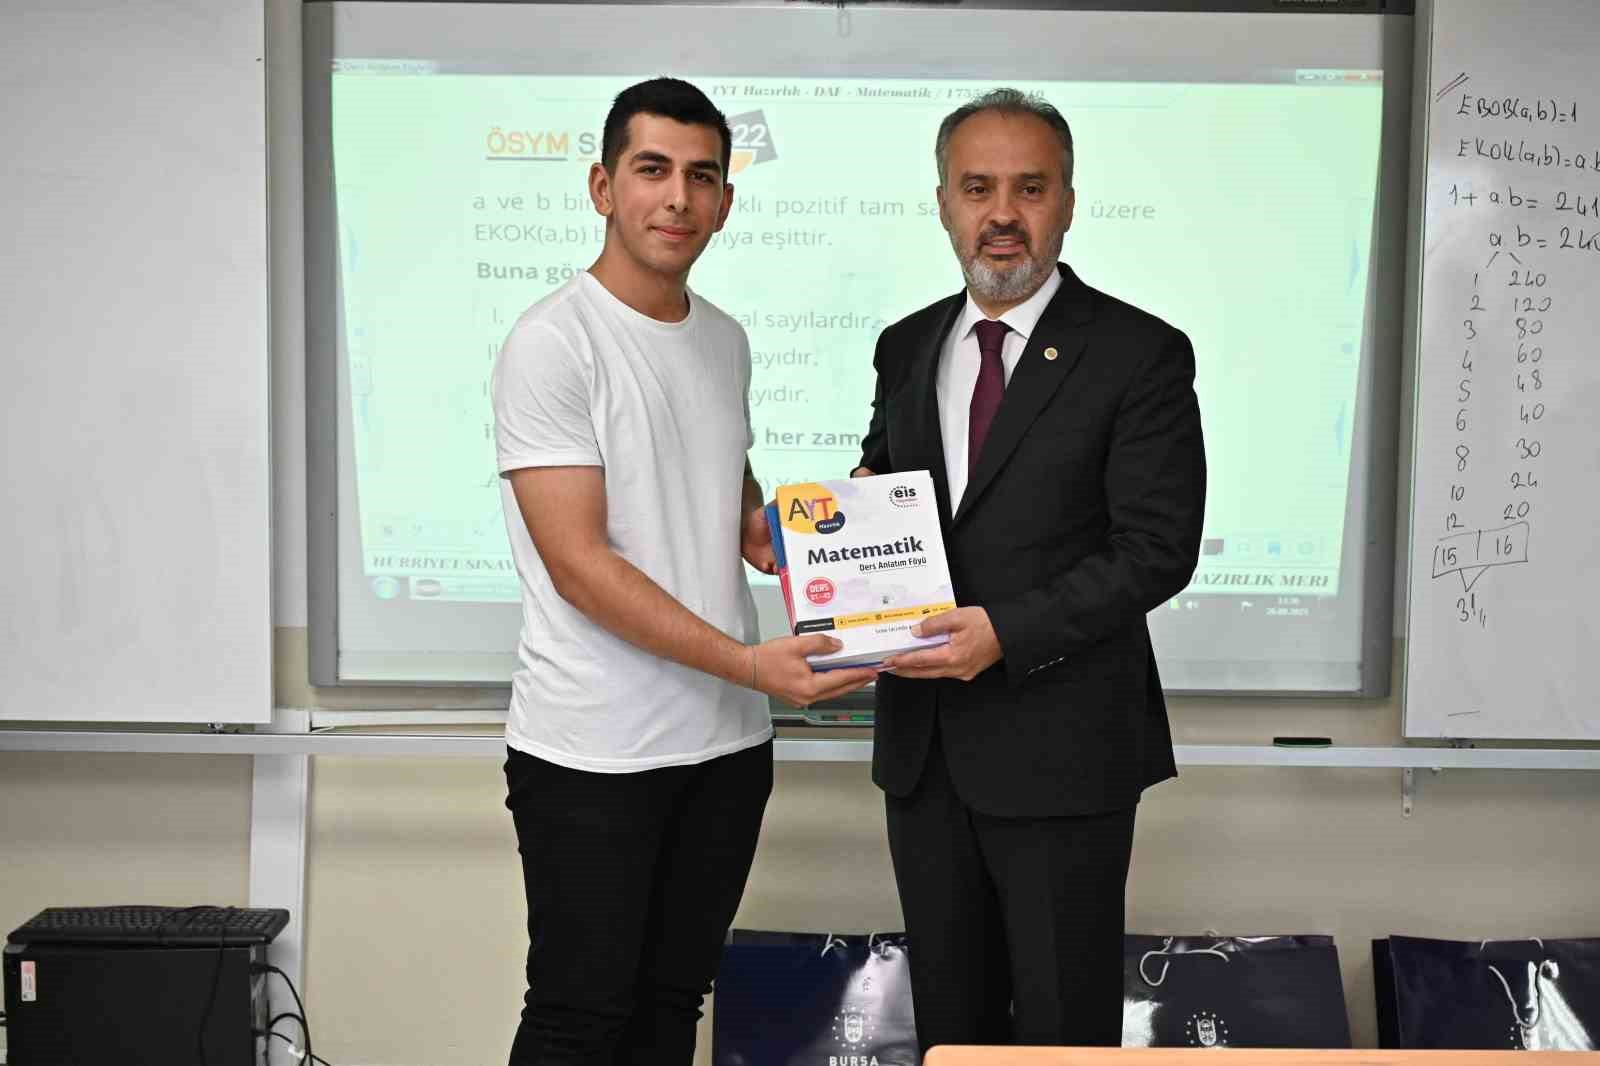 Bursa’da üniversite adaylarına ücretsiz kurs desteği